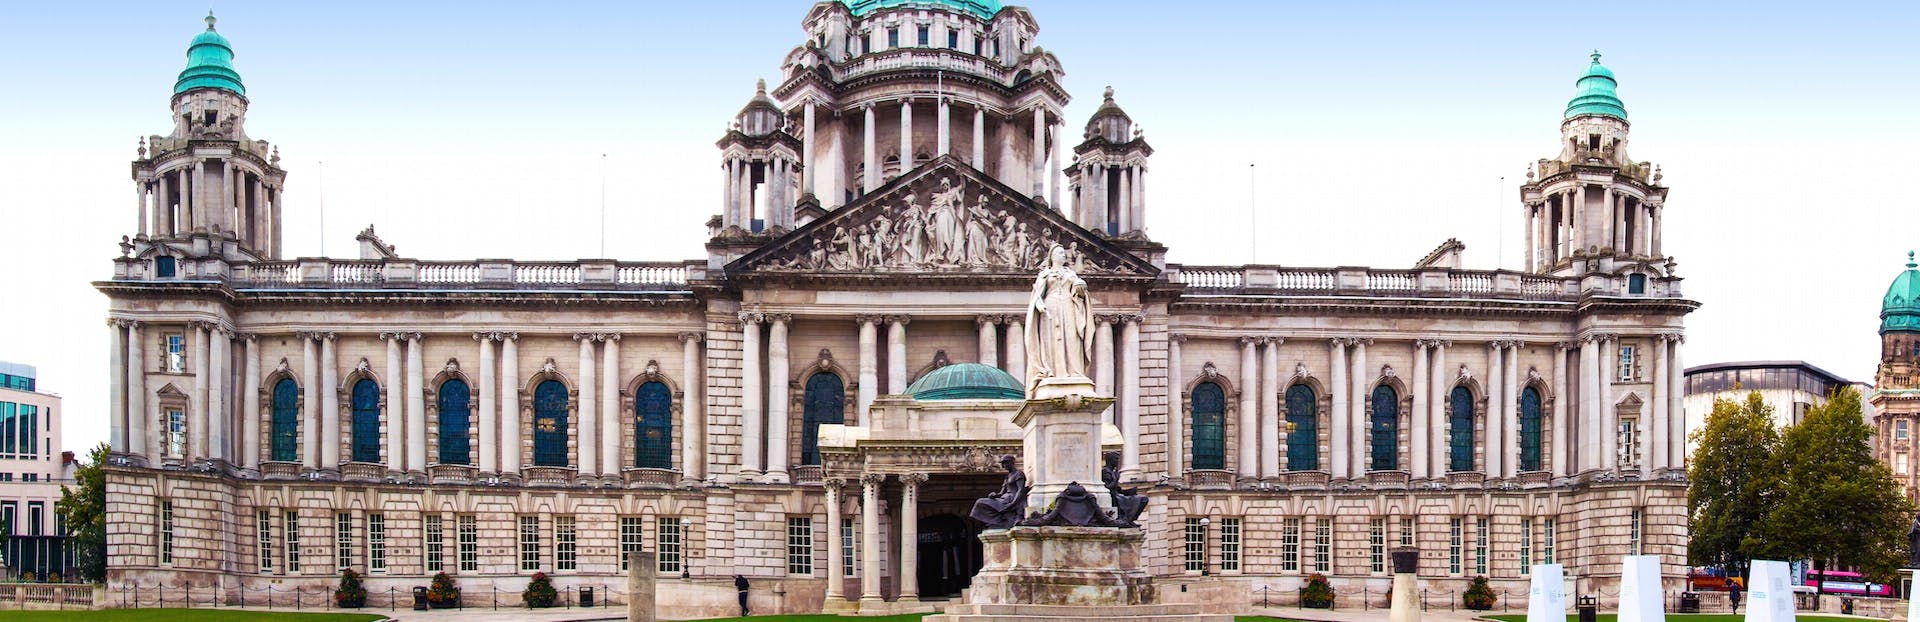 Explore lo mejor de Belfast en un tour de audio autoguiado